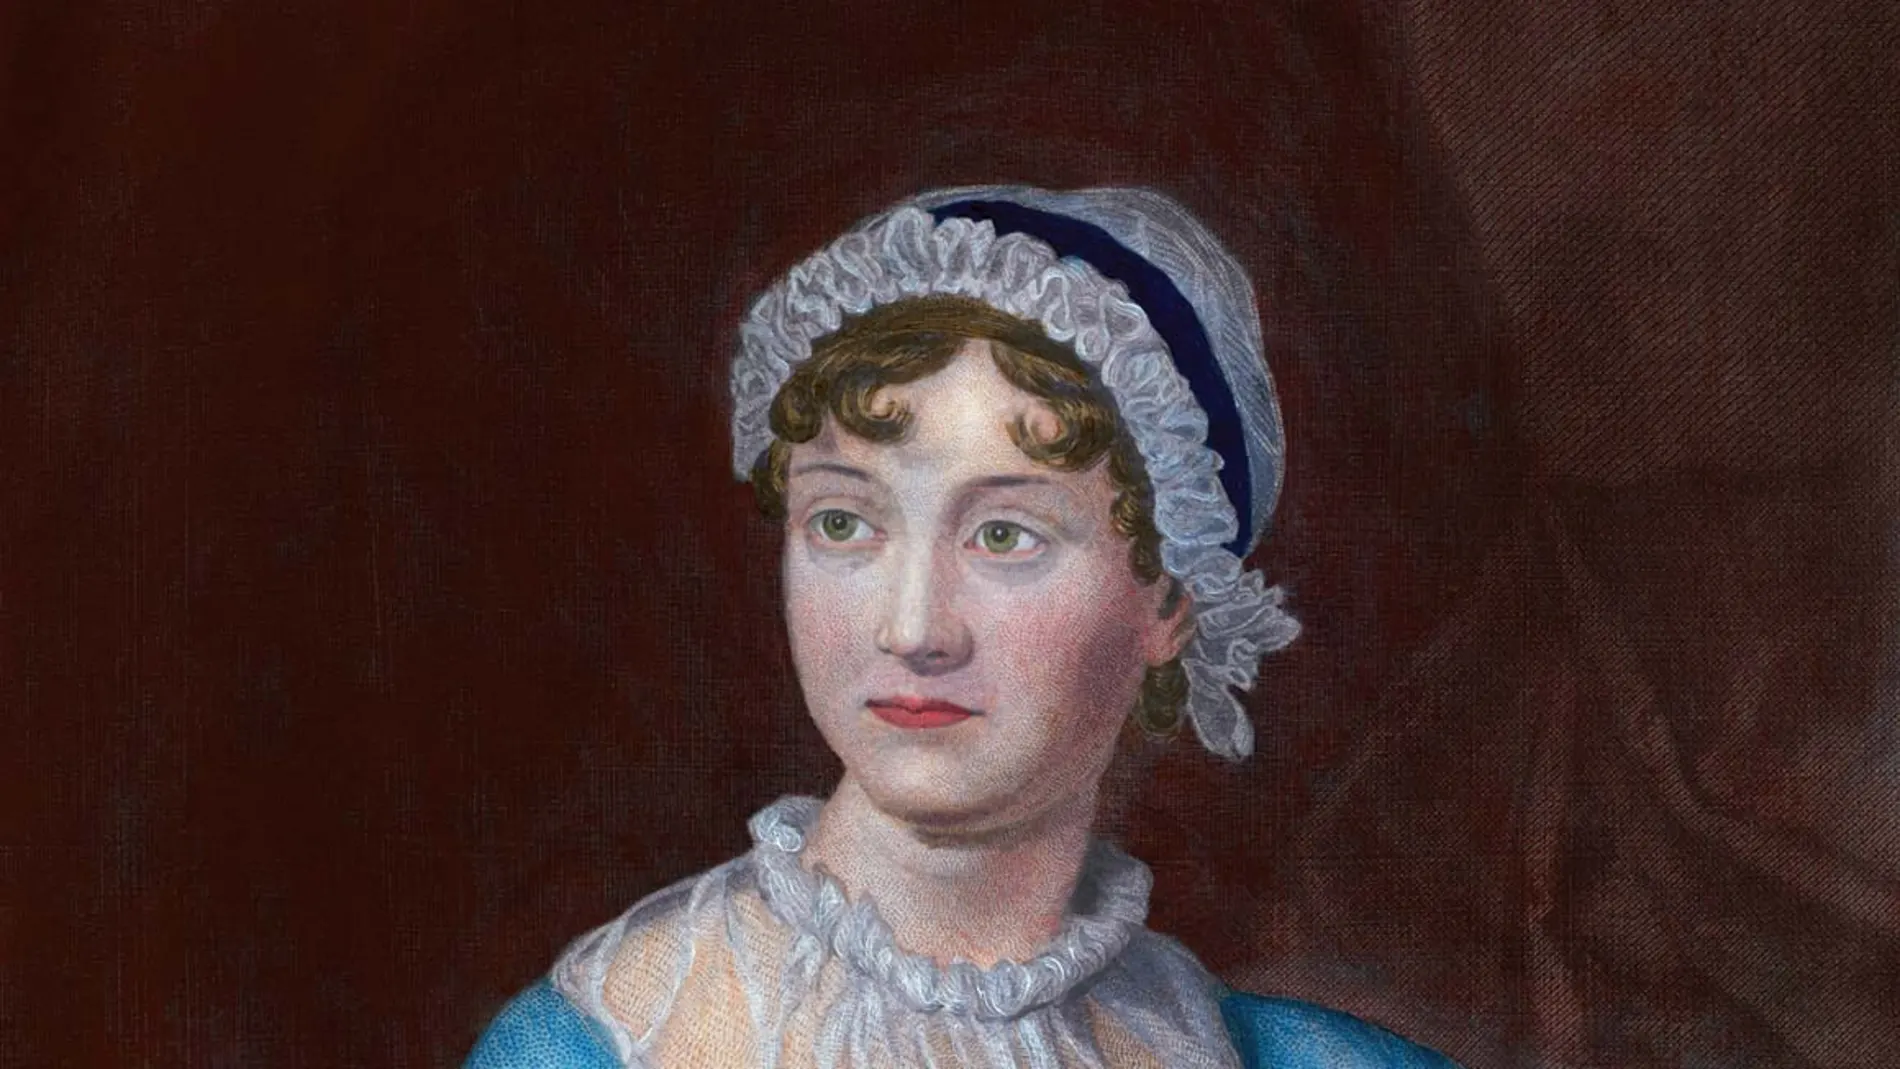 La novelista Jane Austen nació en Steventon, al sur de Inglaterra, en diciembre de 1775